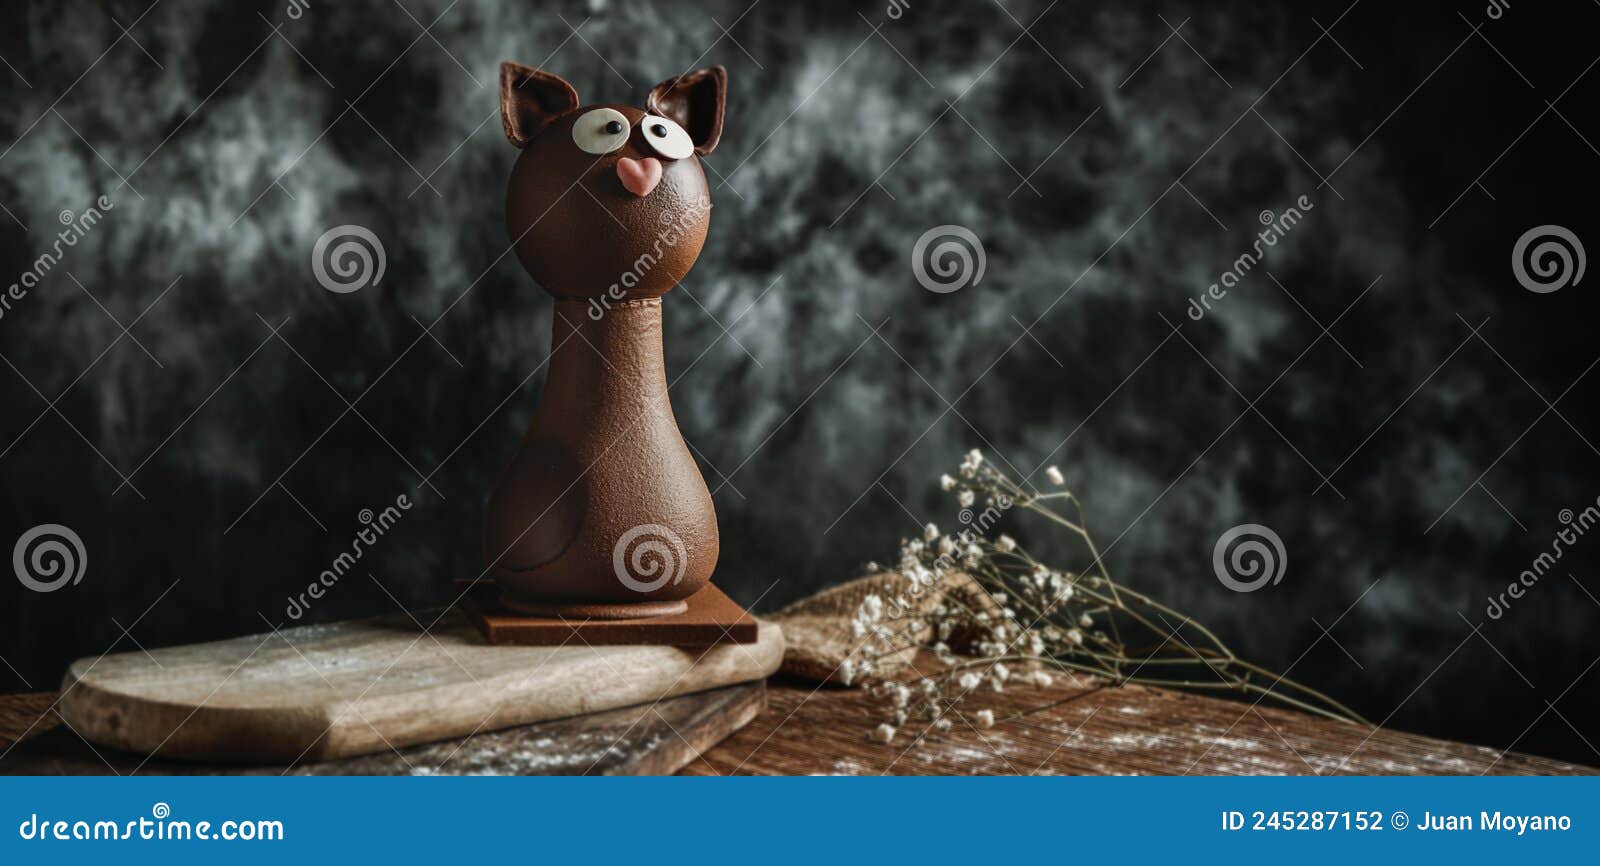 chocolate cat as a mona de pascua, web banner